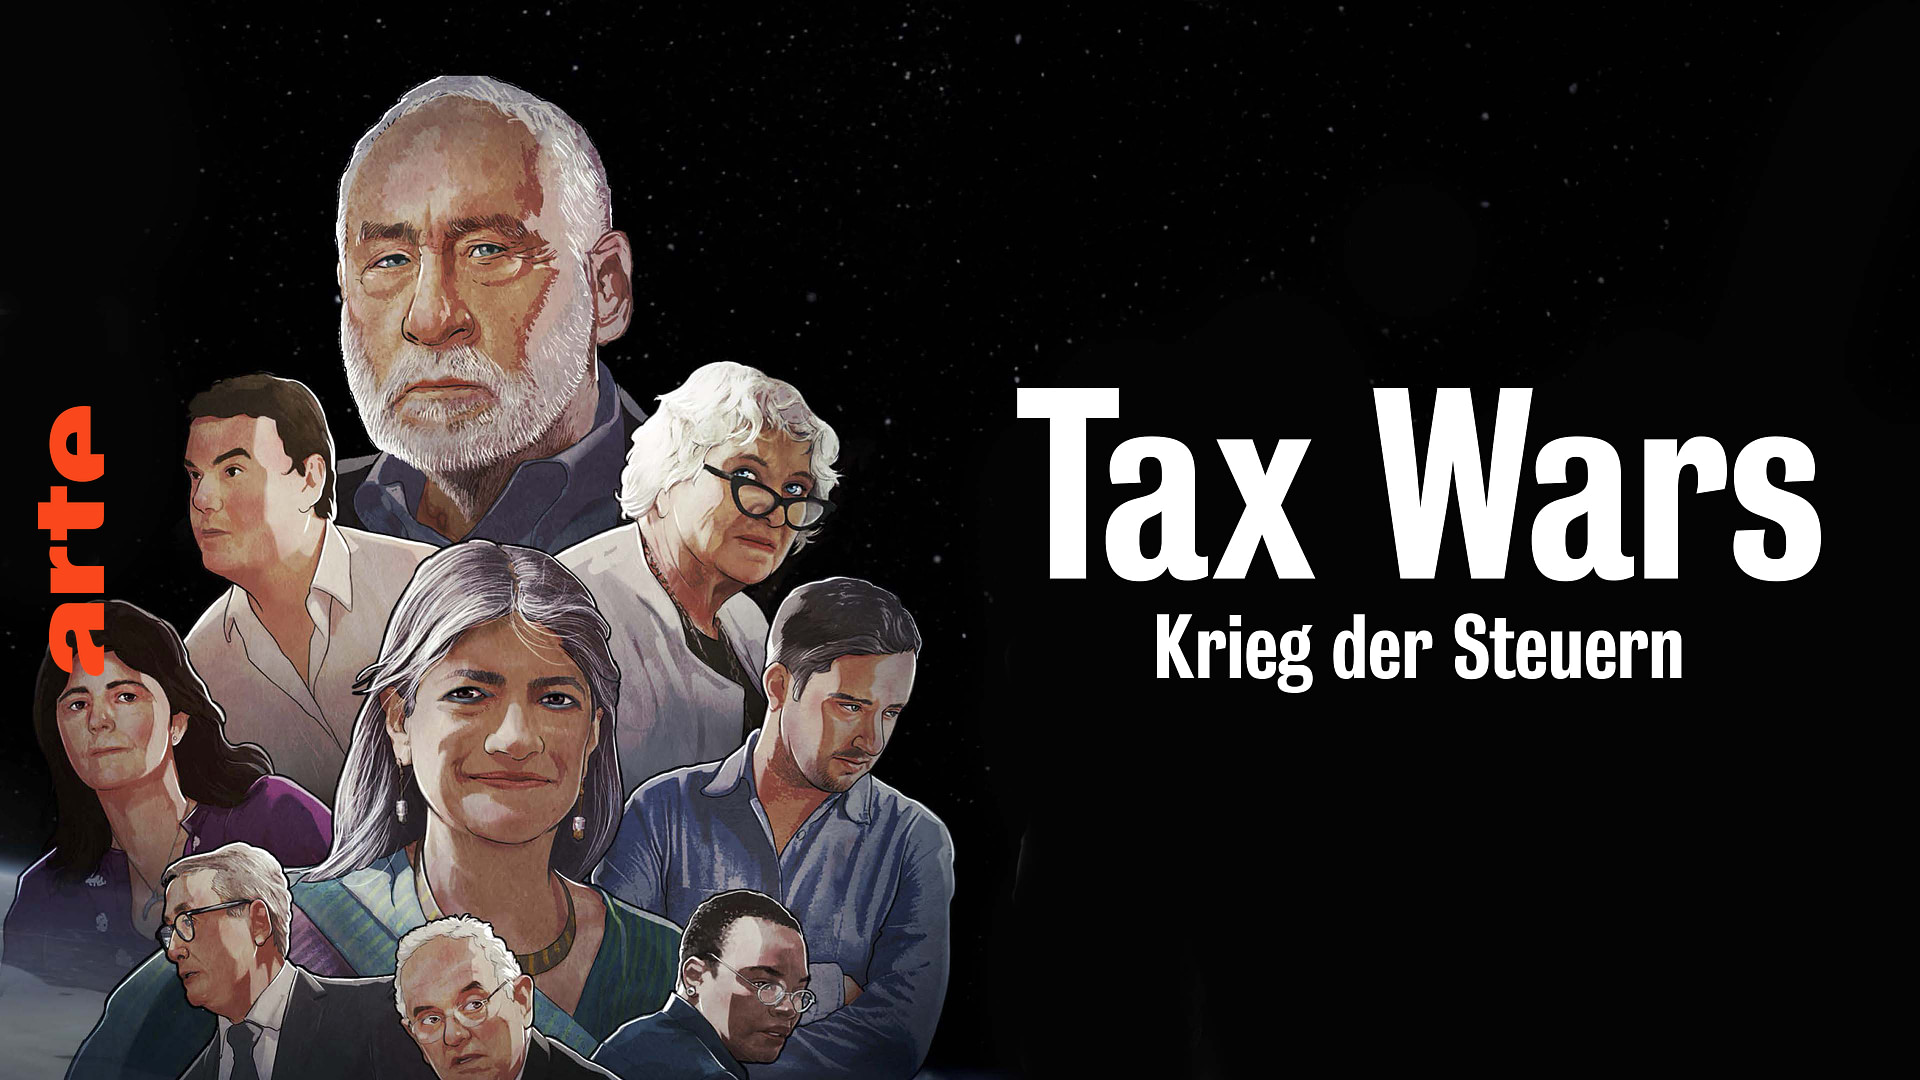 Tax Wars - Krieg der Steuern